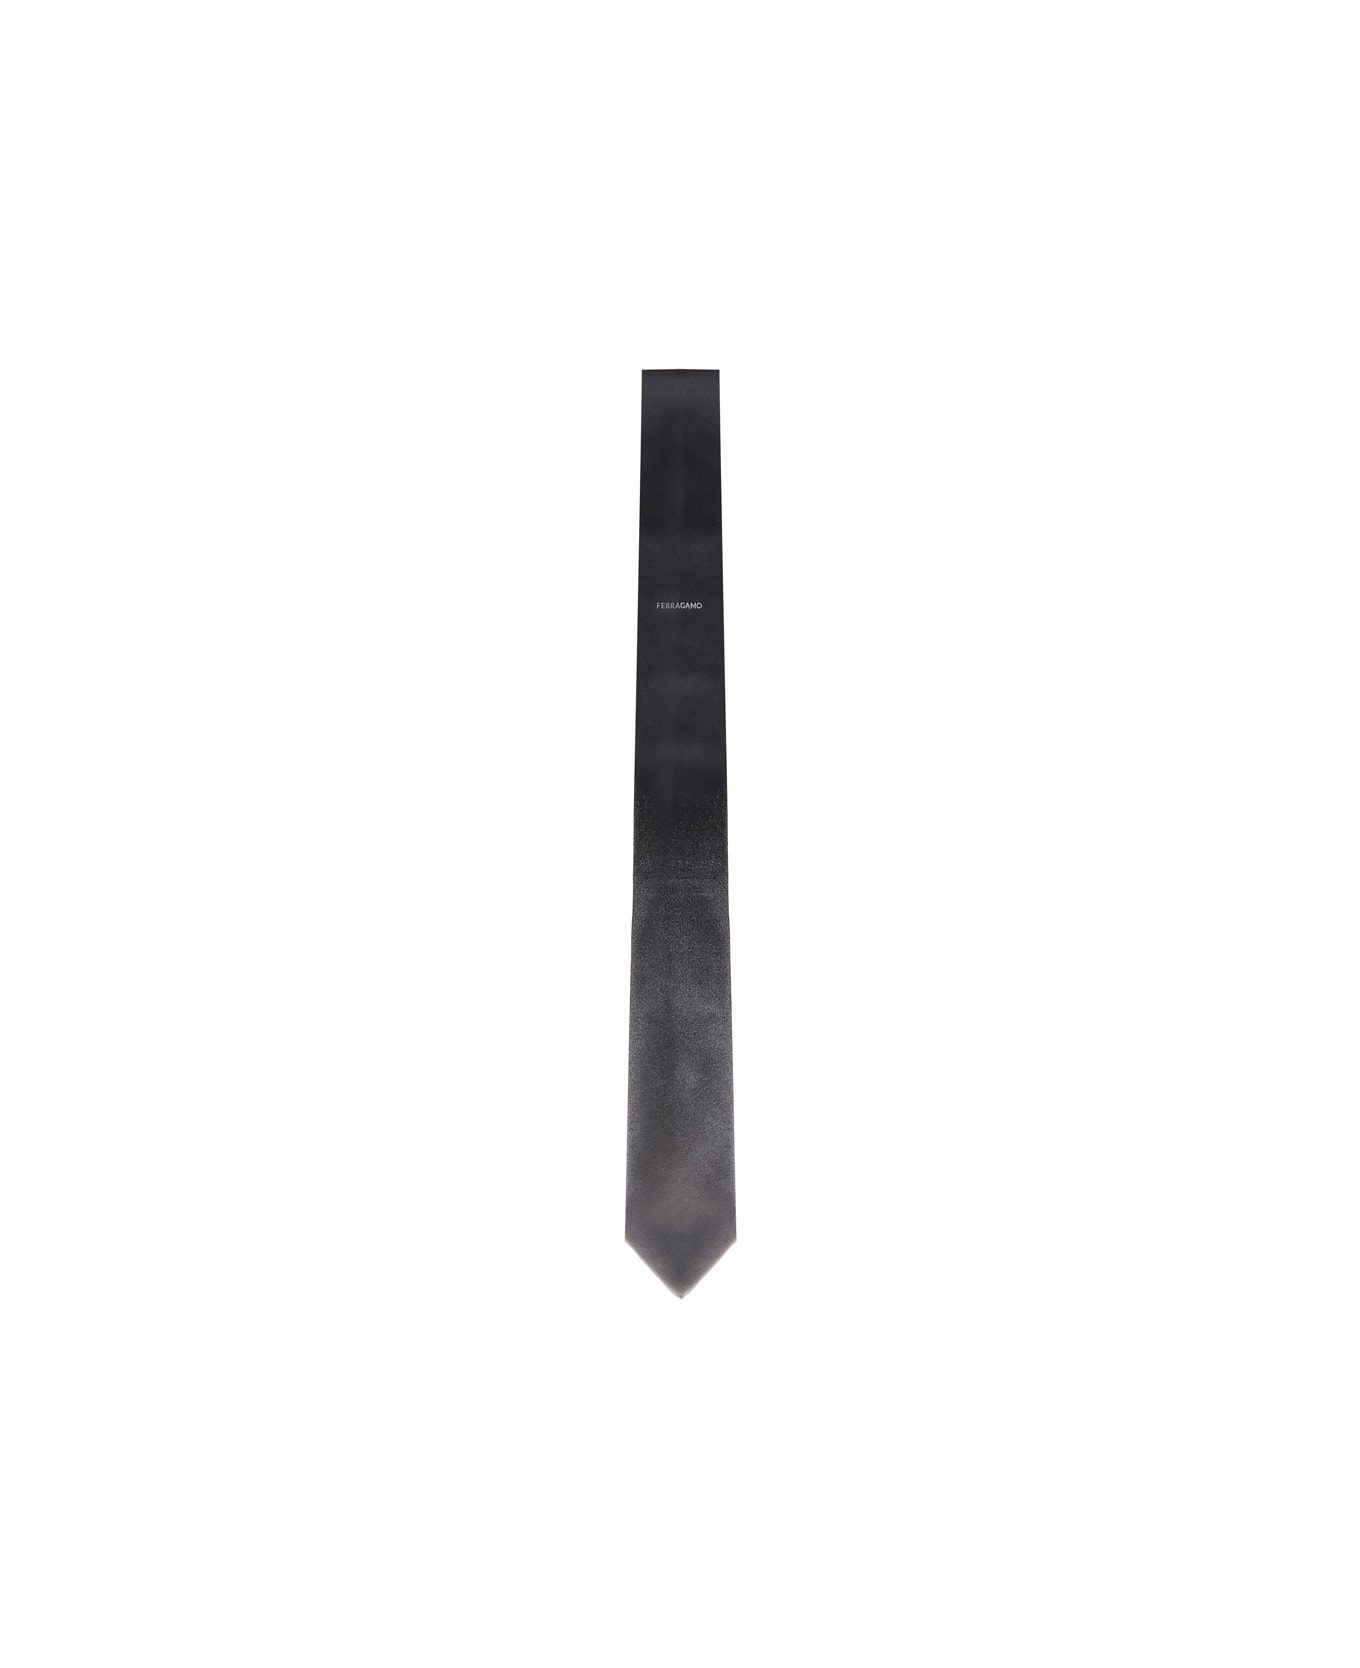 Ferragamo Tie With Shaded Effect - Black, grey